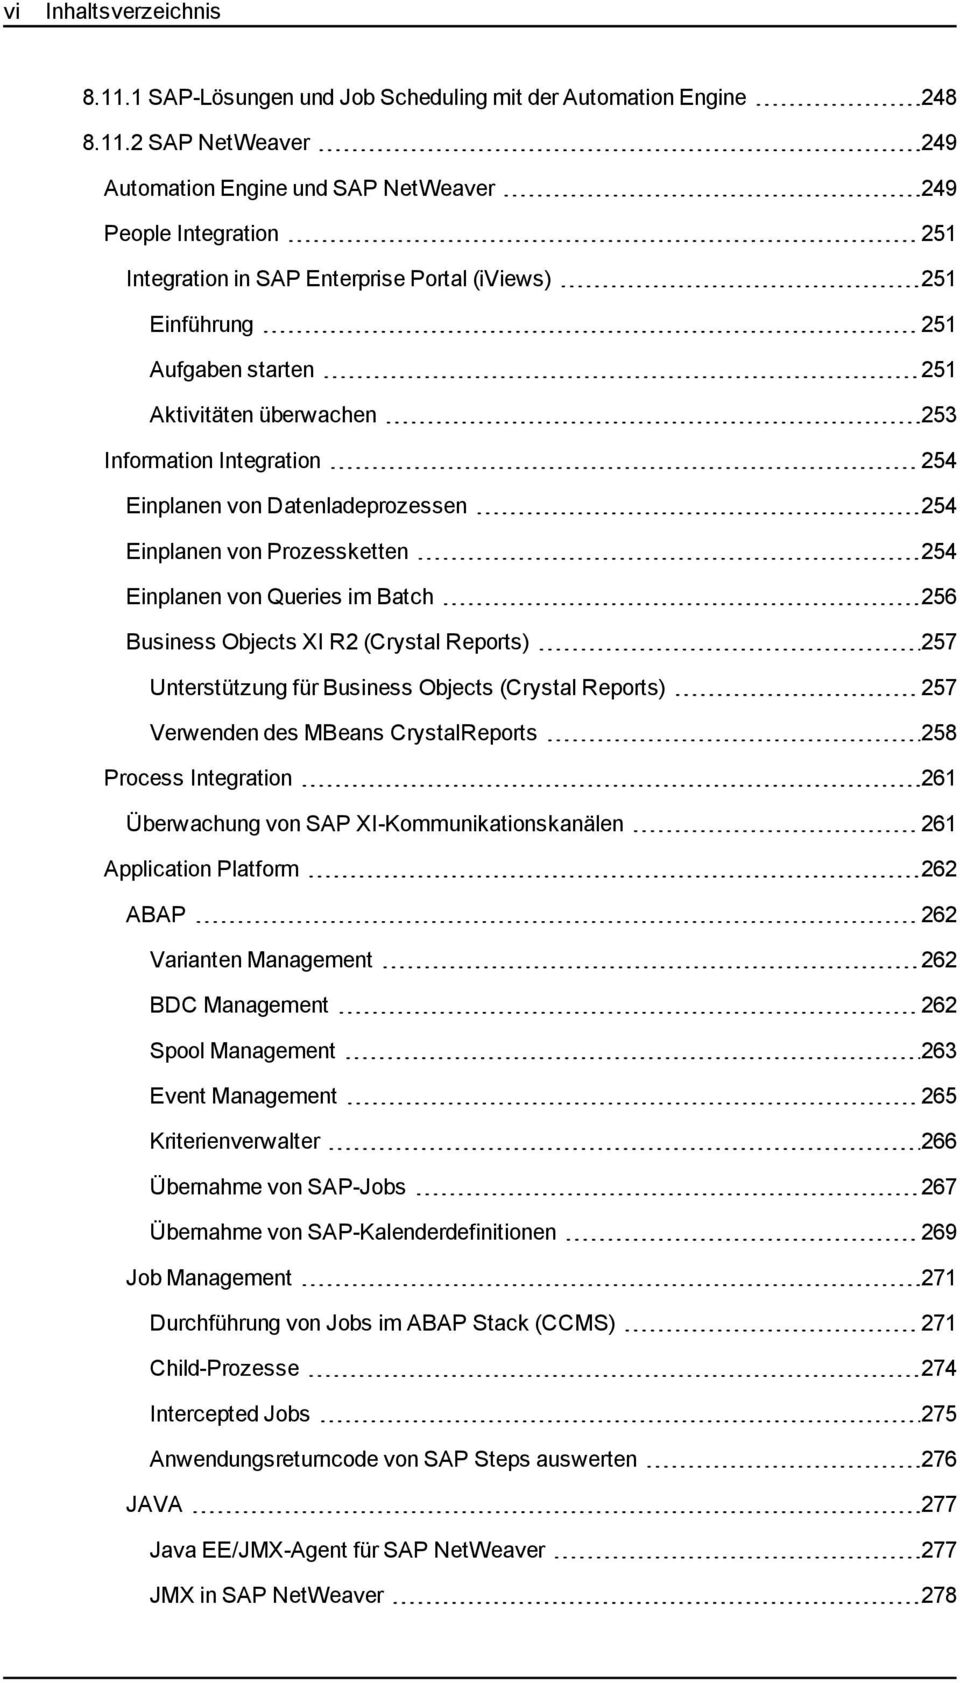 2 SAP NetWeaver 249 Automation Engine und SAP NetWeaver 249 People Integration 251 Integration in SAP Enterprise Portal (iviews) 251 Einführung 251 Aufgaben starten 251 Aktivitäten überwachen 253